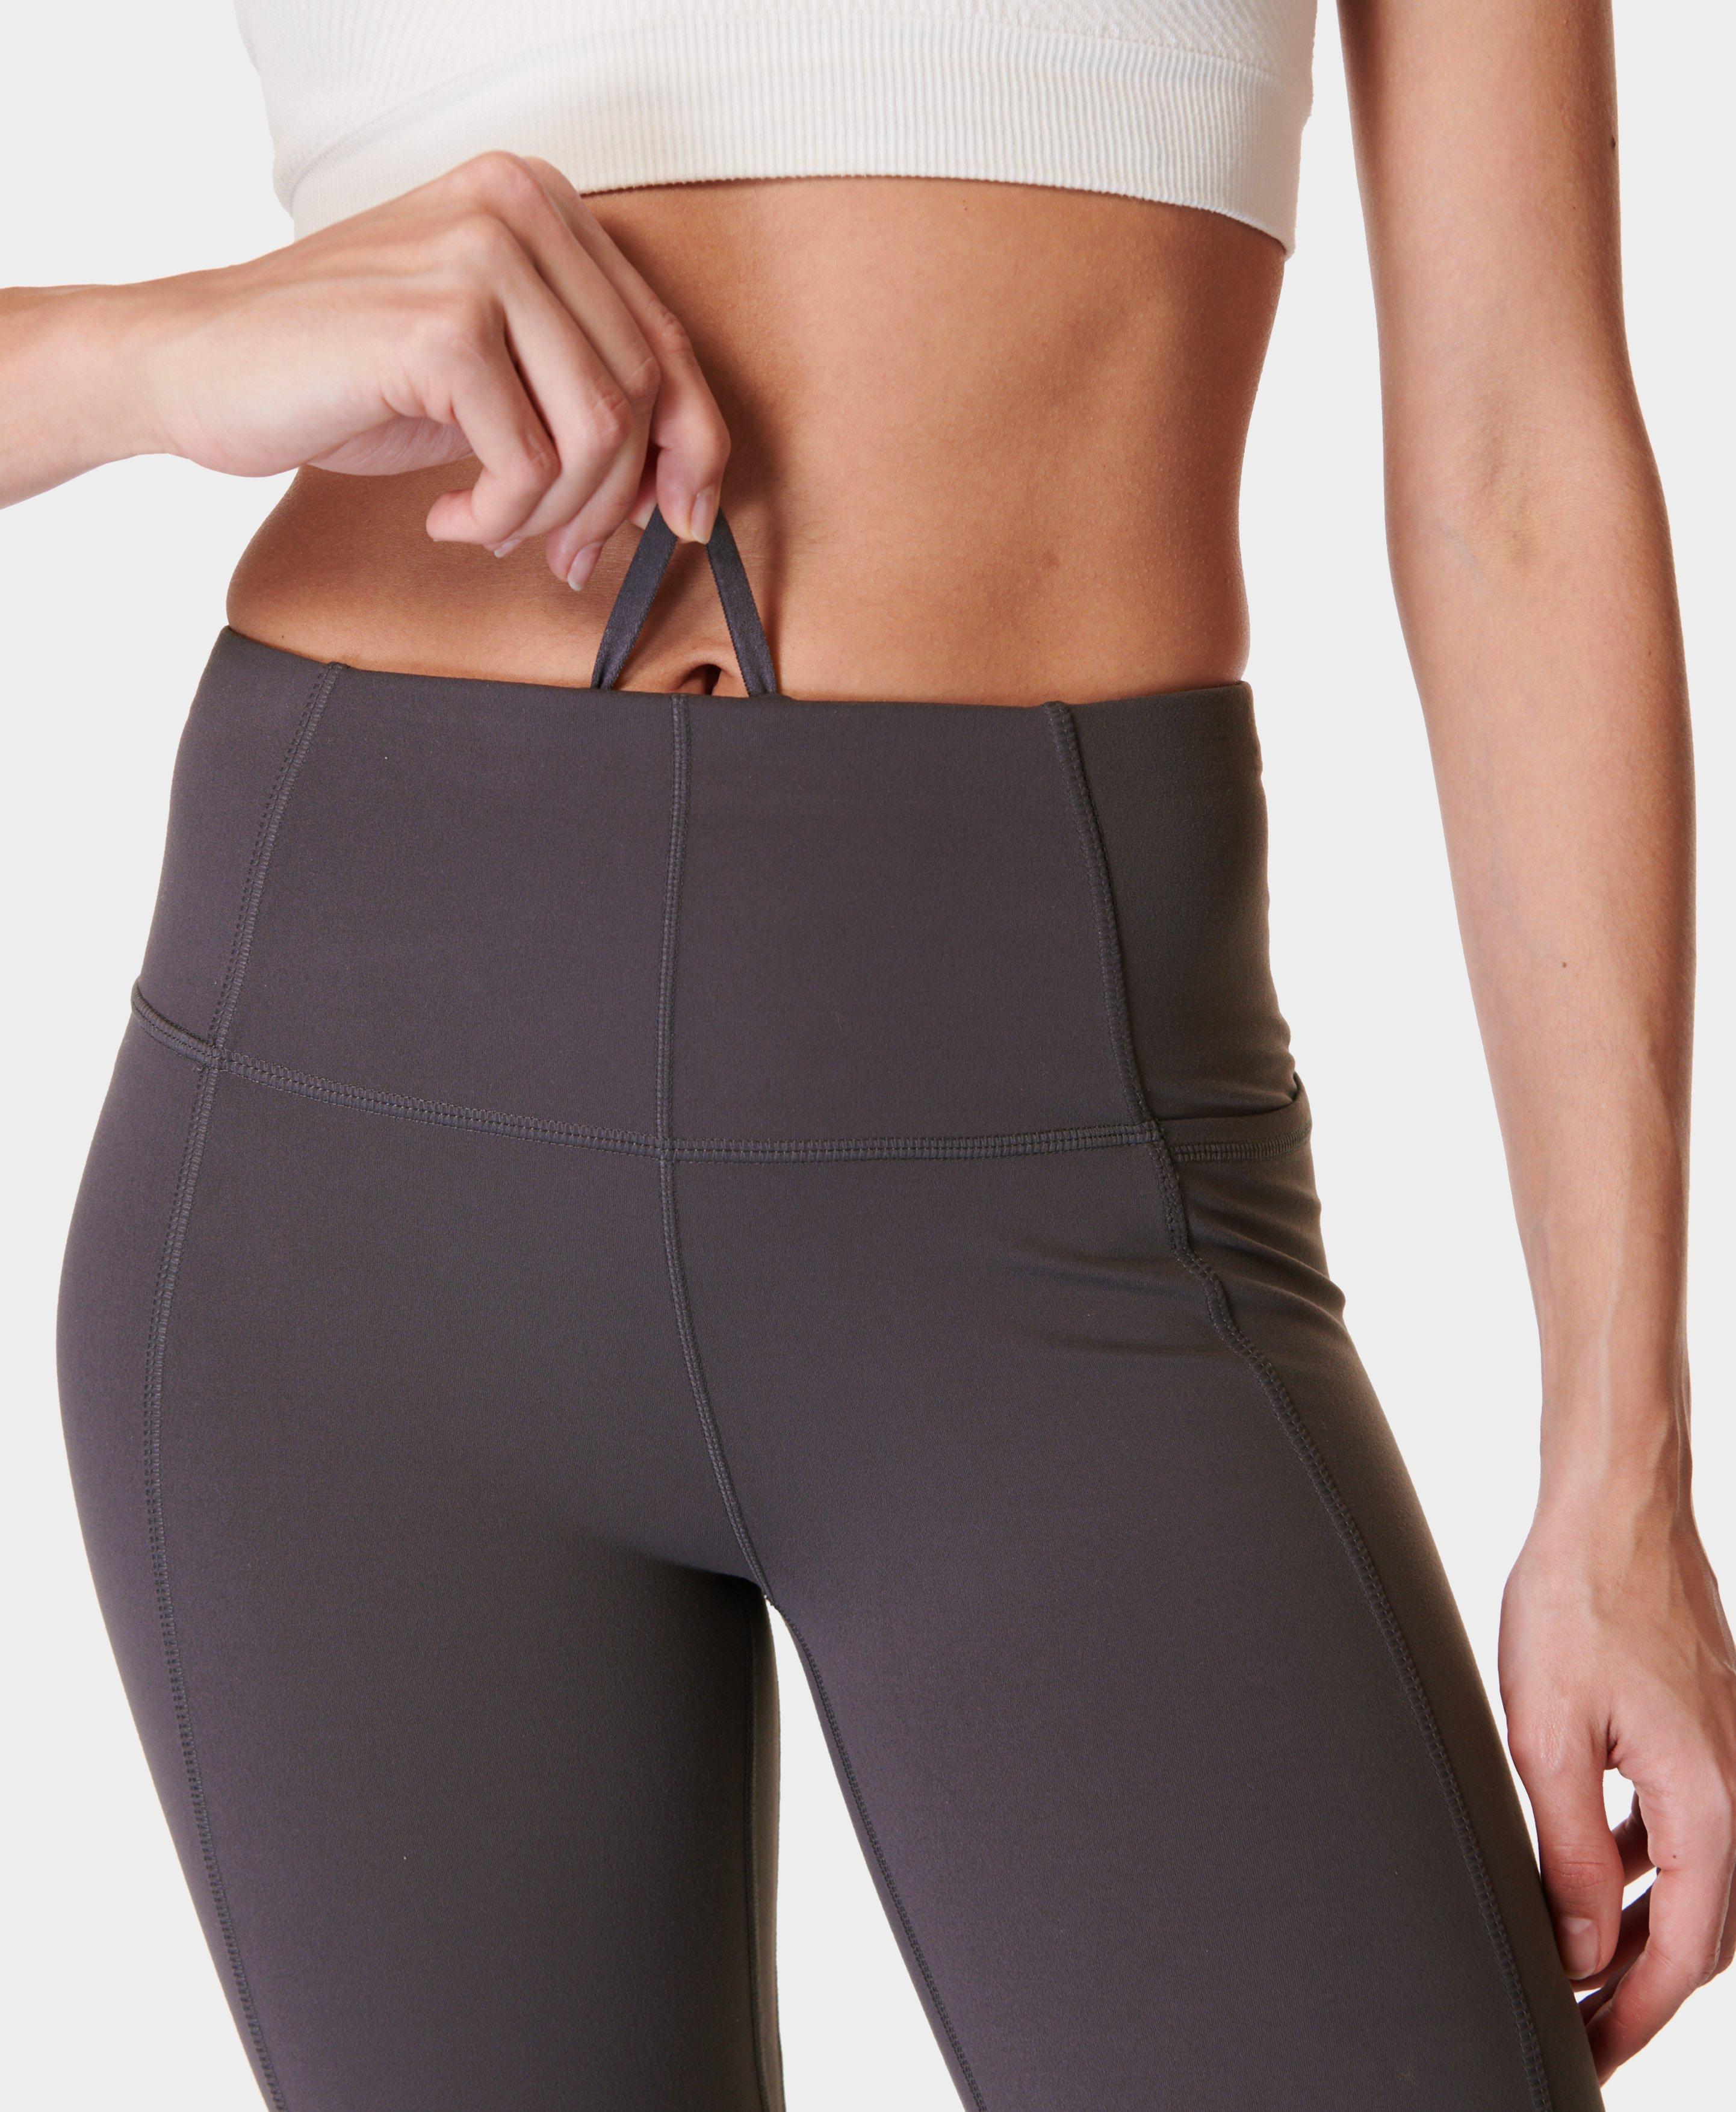 Fashion Pants! Velvety Super Soft Lightweight Leggings For Women Sports  Running Fitness Yoga Pants M Dark Gray